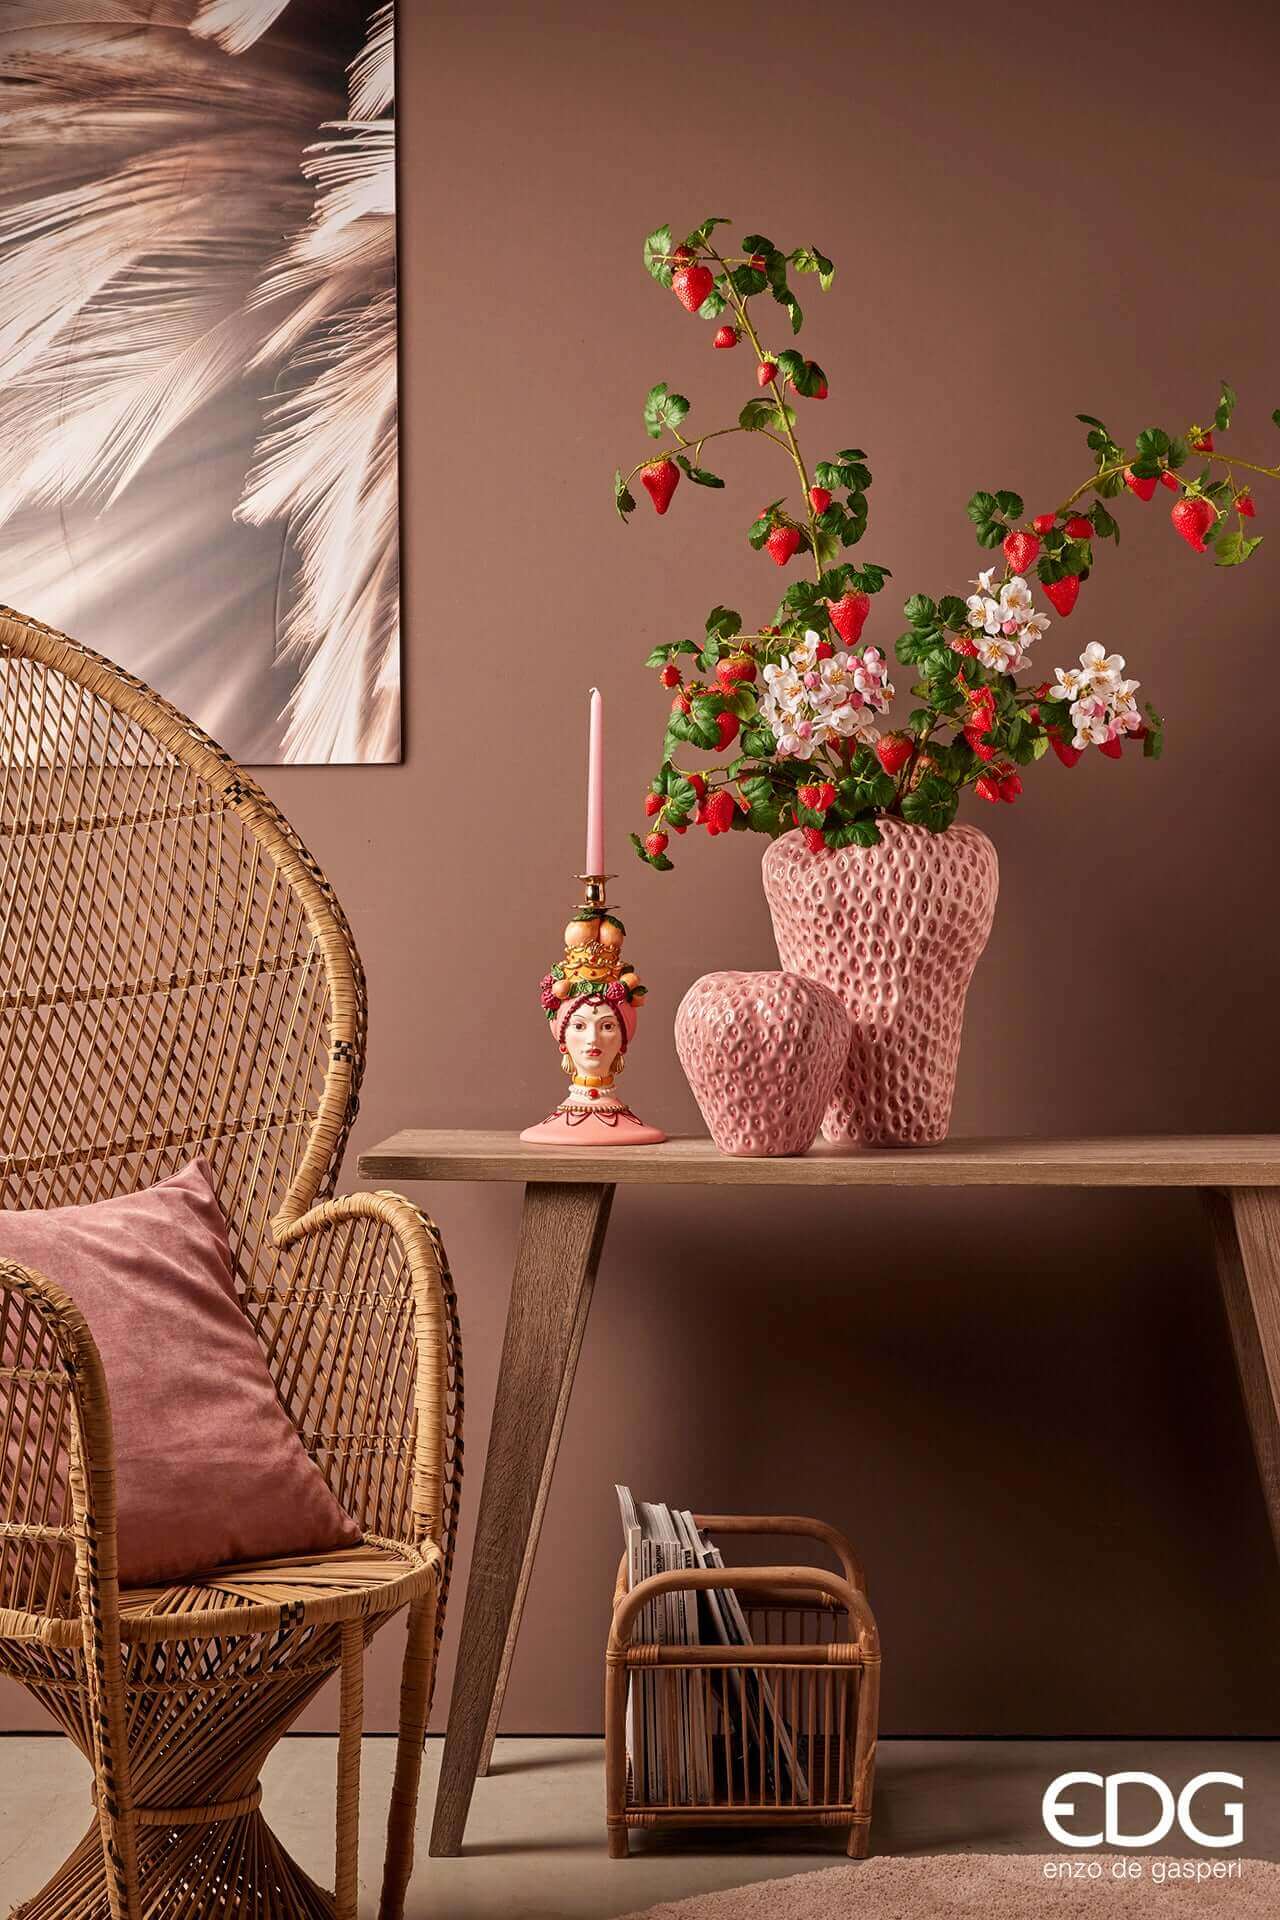 Italiving Keramikvase Erdbeervase Höhe 21 cm Ø 20 cm - Dekovase Keramik rosa